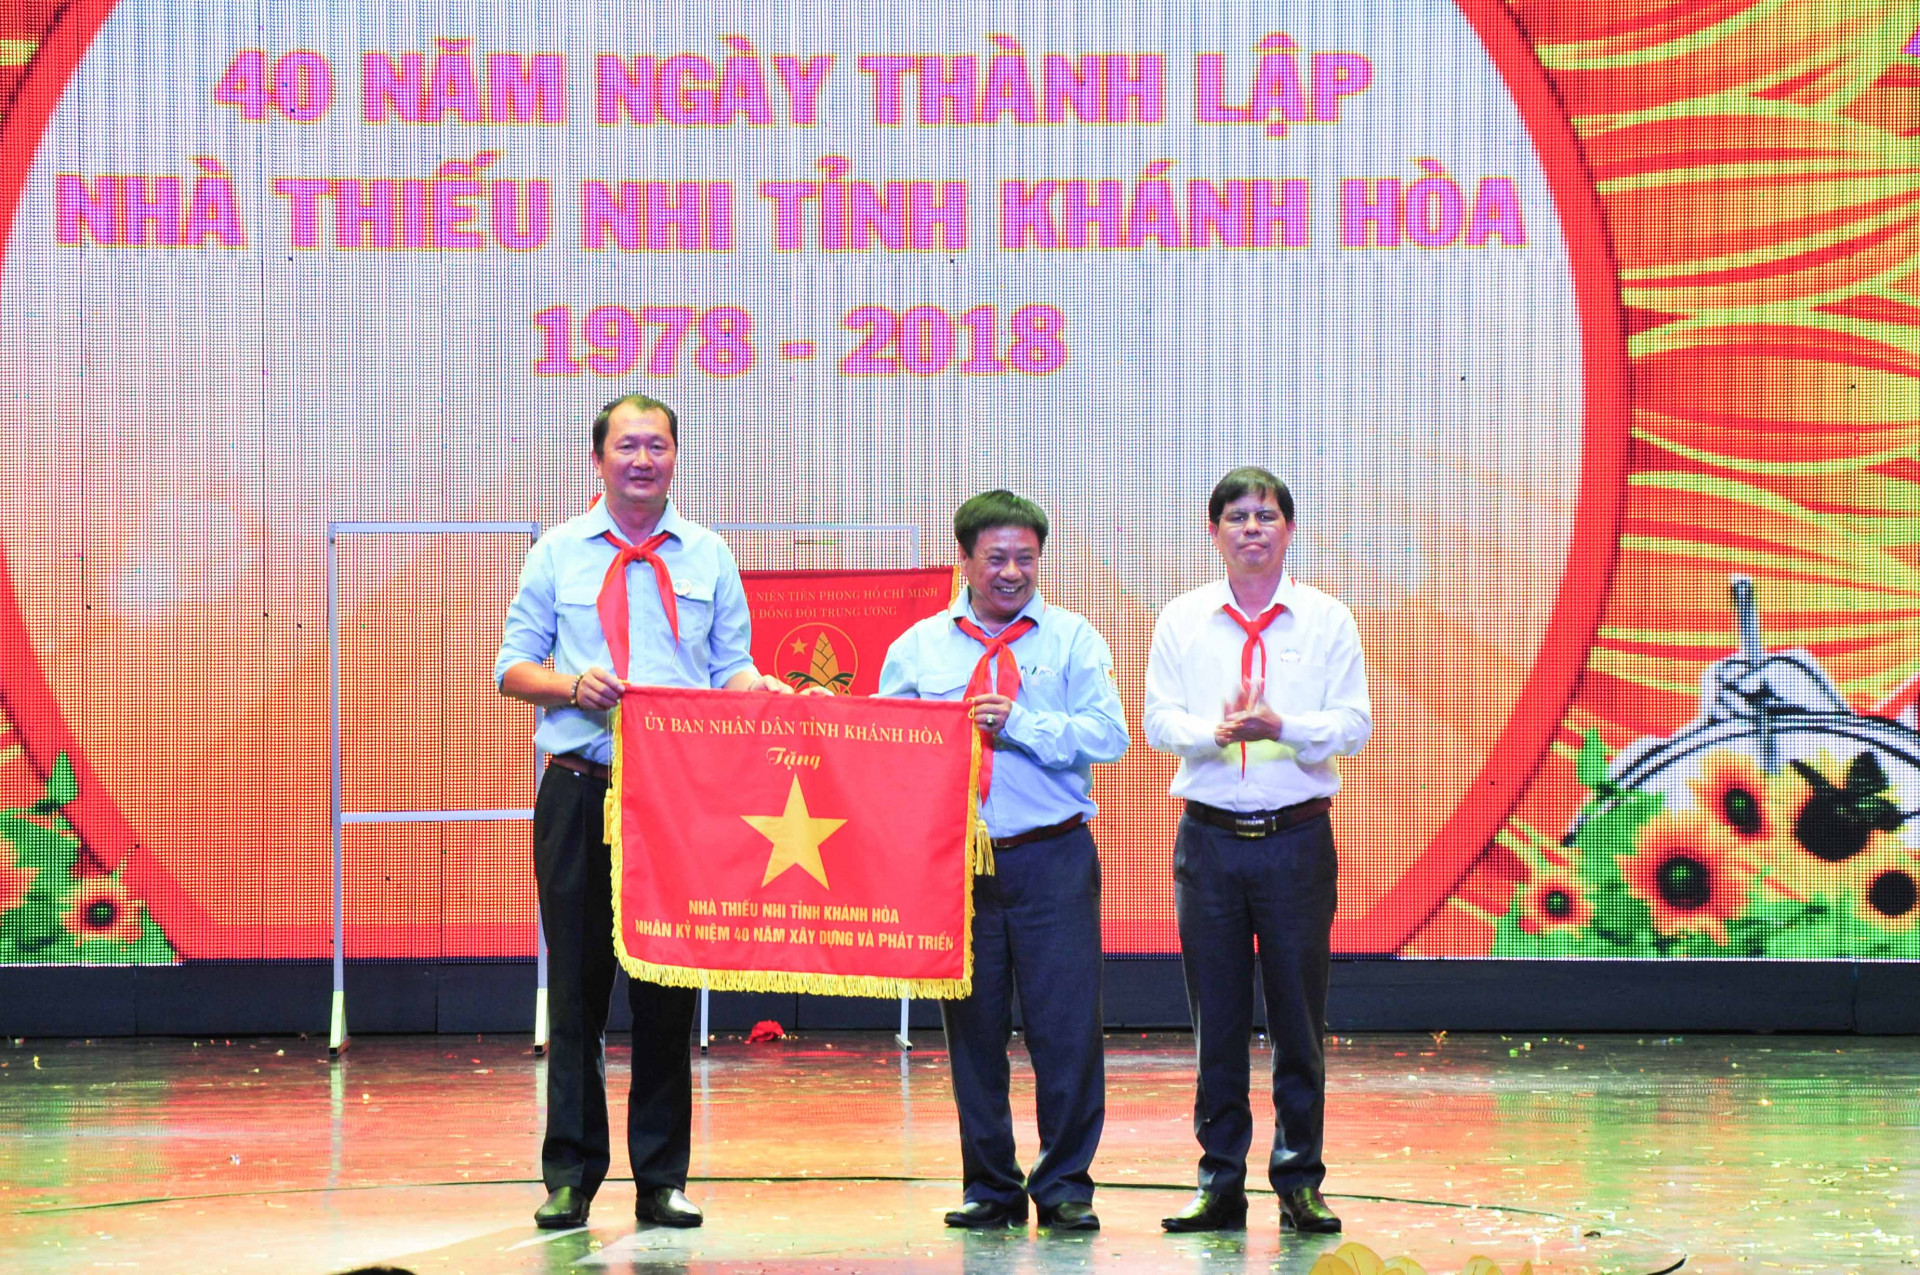 Lãnh đạo Tỉnh uỷ trao cờ thi đua của UBND tỉnh cho Nhà Thiếu nhi tỉnh